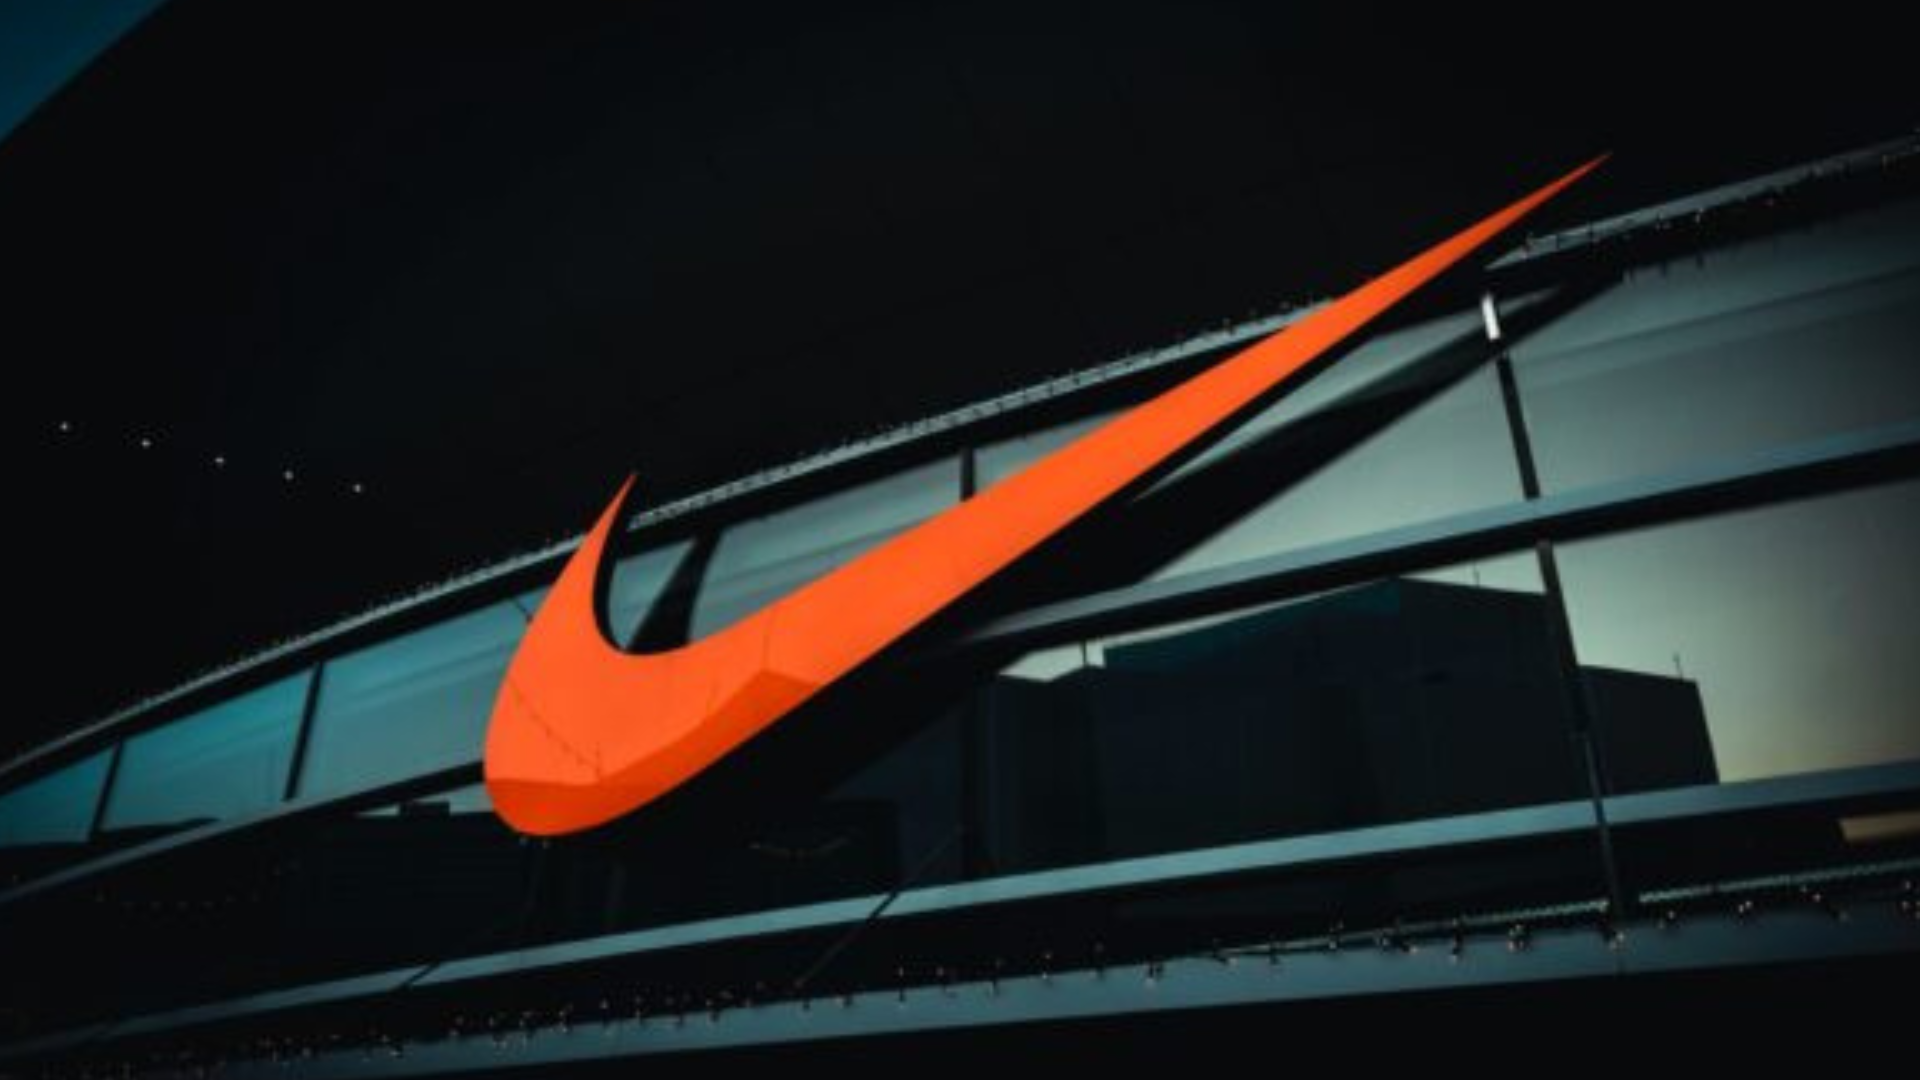 Spoločnosti Nike trhy neverili. Prekonala ich očakávania, aj keď jej klesol zisk